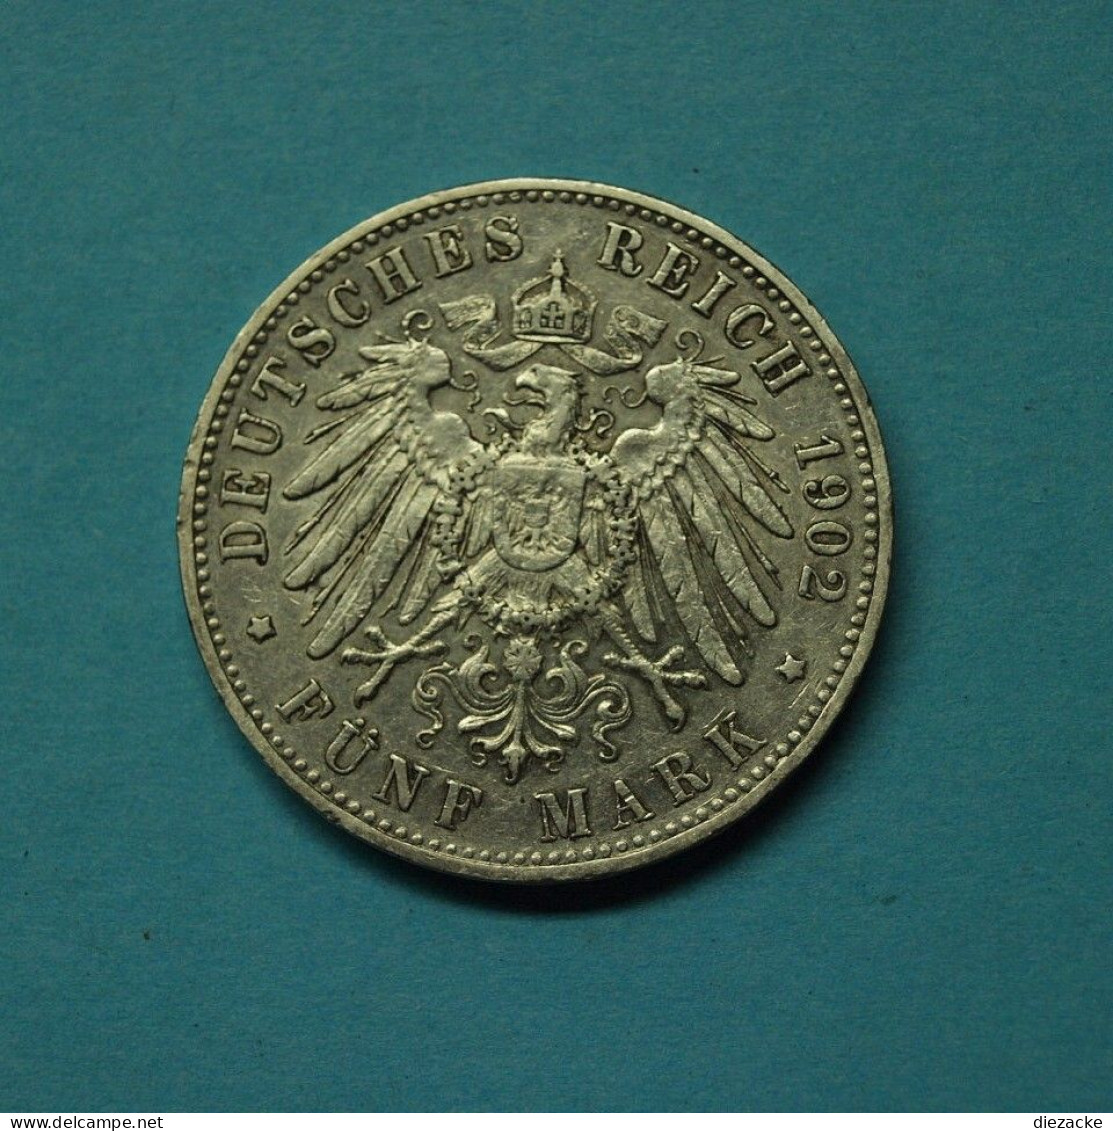 Württemberg 1902 5 Mark Wilhelm II. (Mük15/5 - 2, 3 & 5 Mark Silver